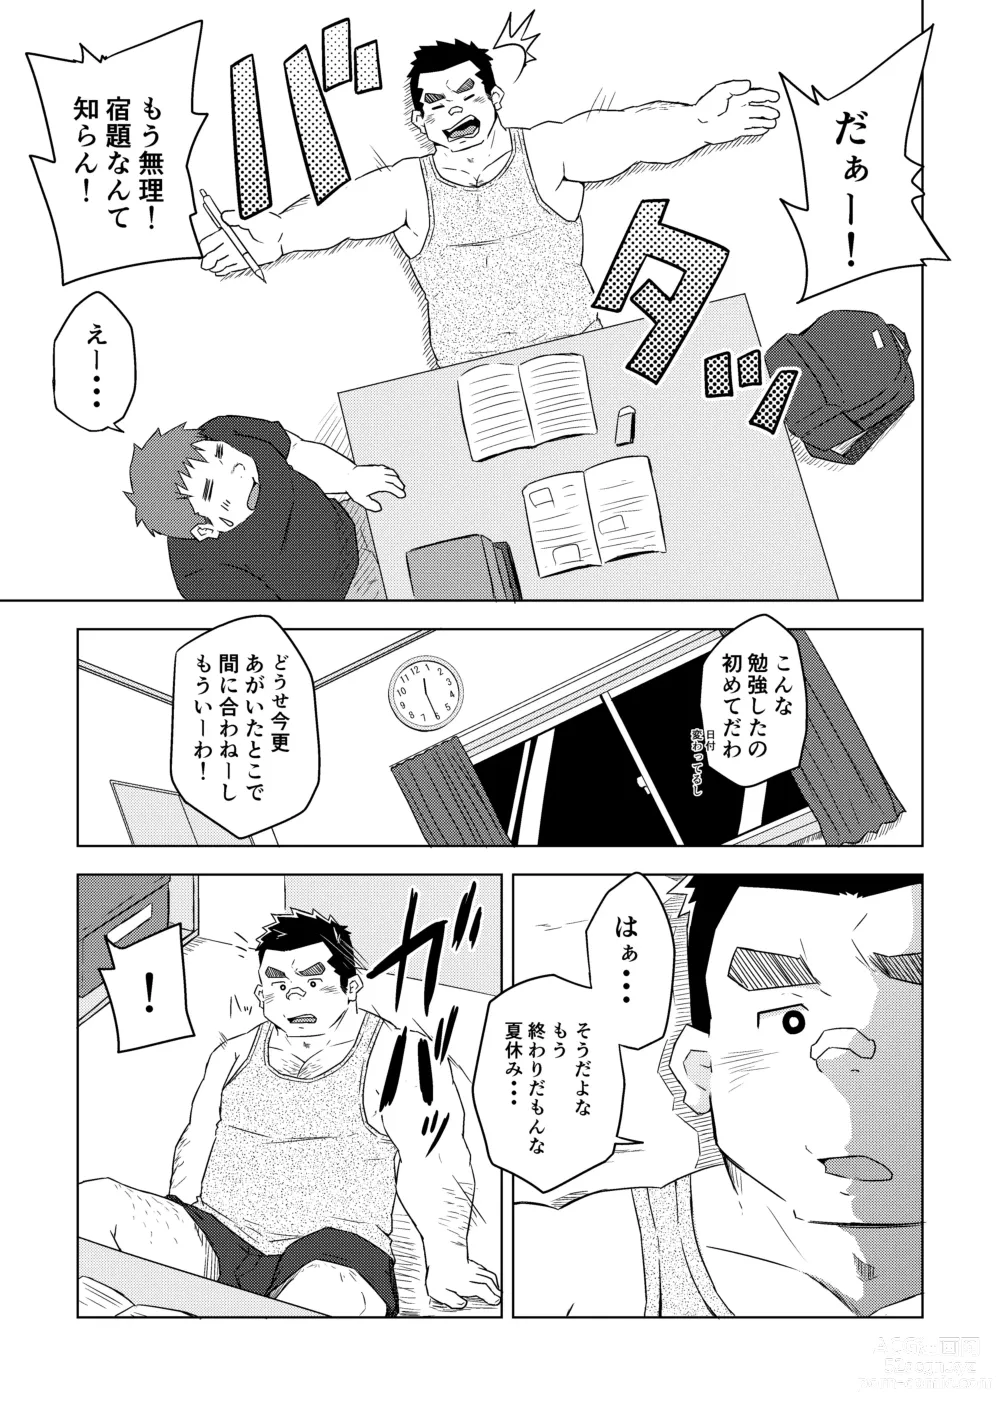 Page 11 of doujinshi Manten no Hoshi 1